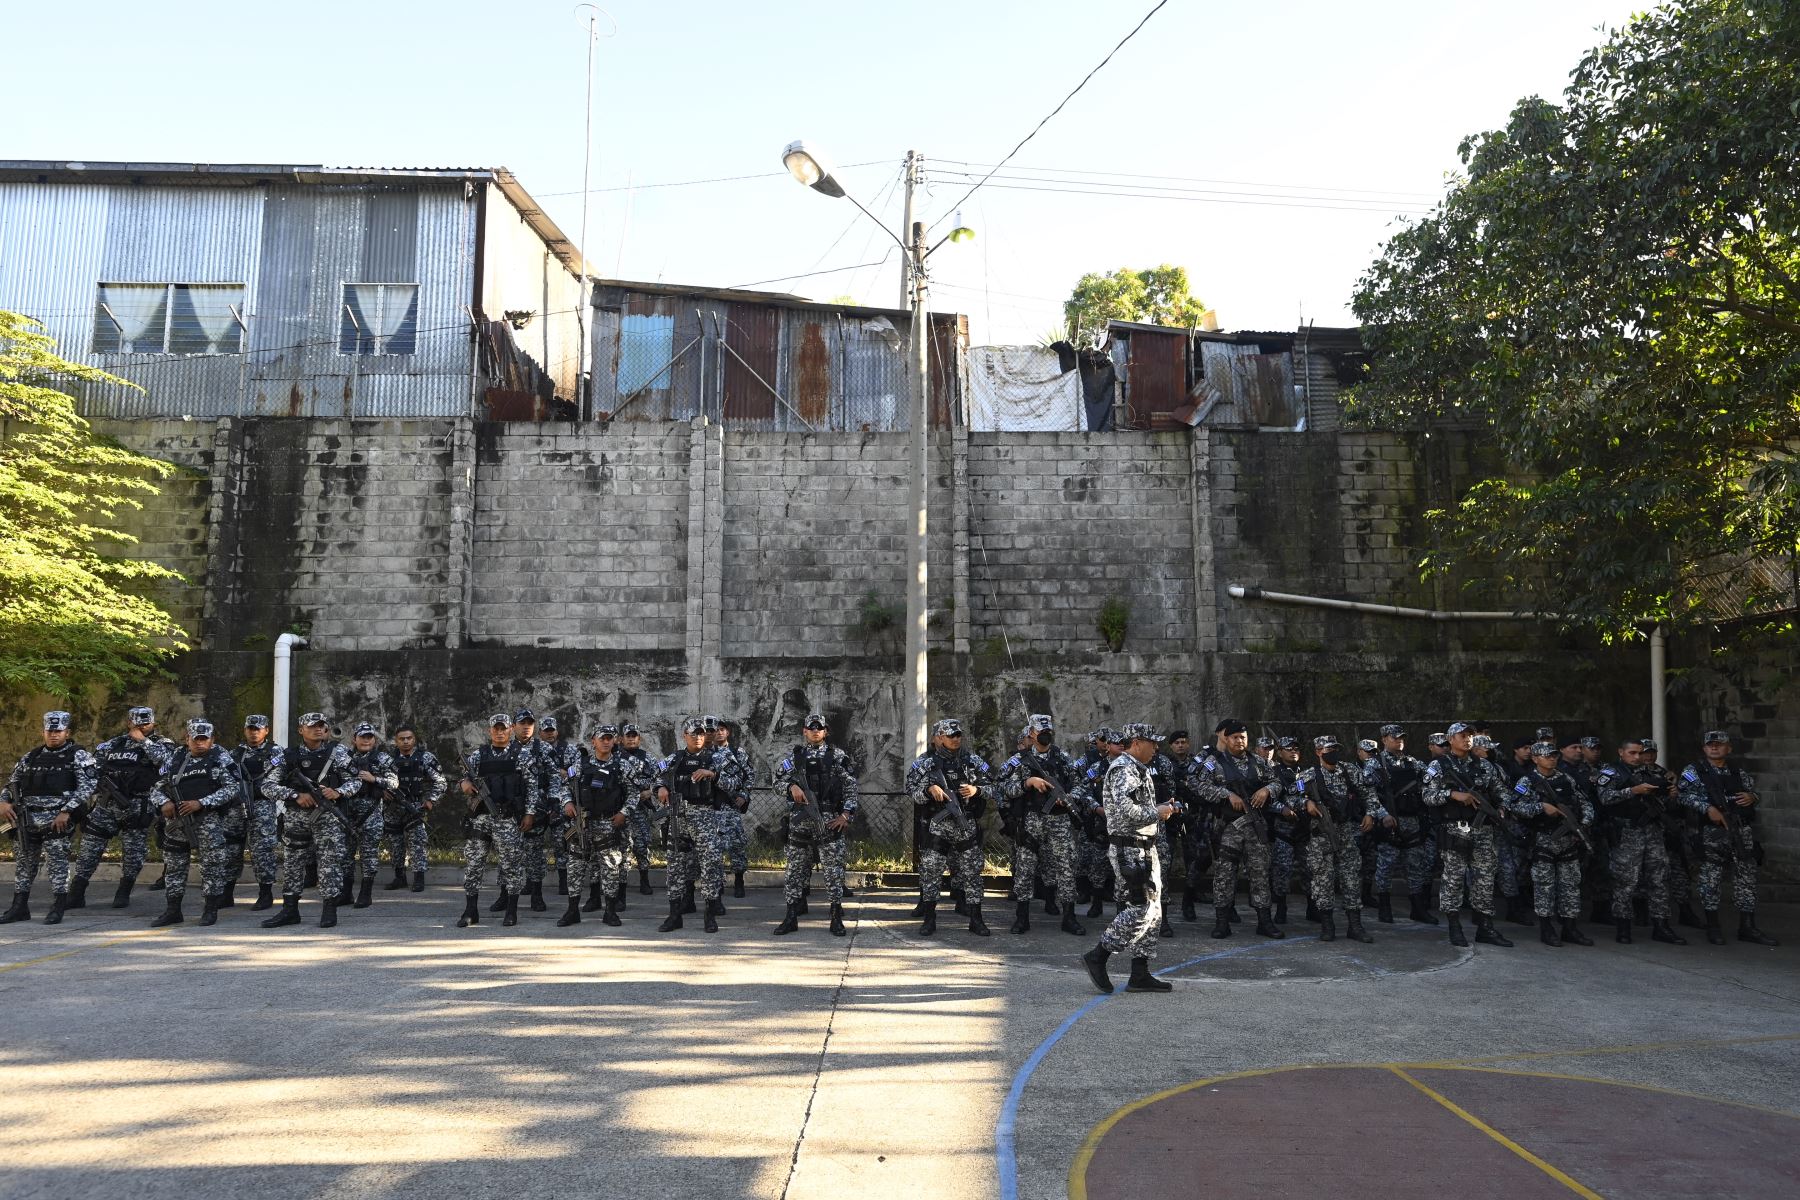 Soldados y policías montan guardia durante un operativo contra bandas criminales, en Soyapango, El Salvador, el 5 de diciembre de 2022.
Foto: AFP